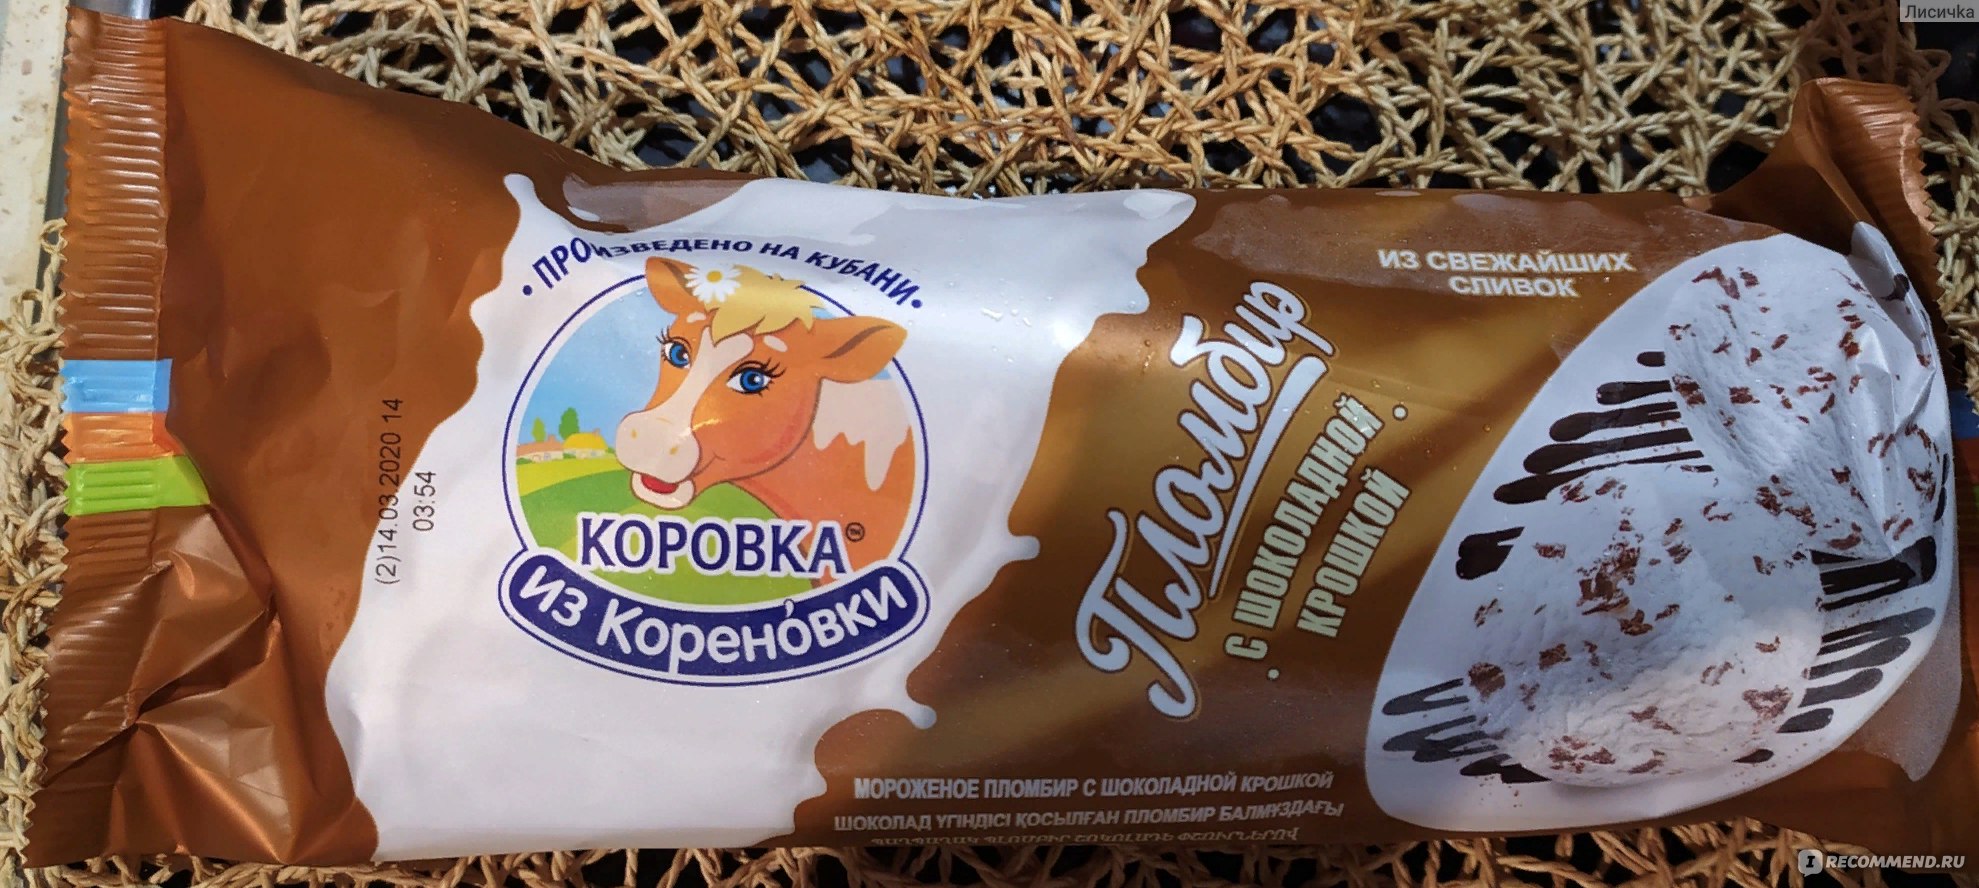 Коровка из Кореновки мороженое с шоколадной крошкой